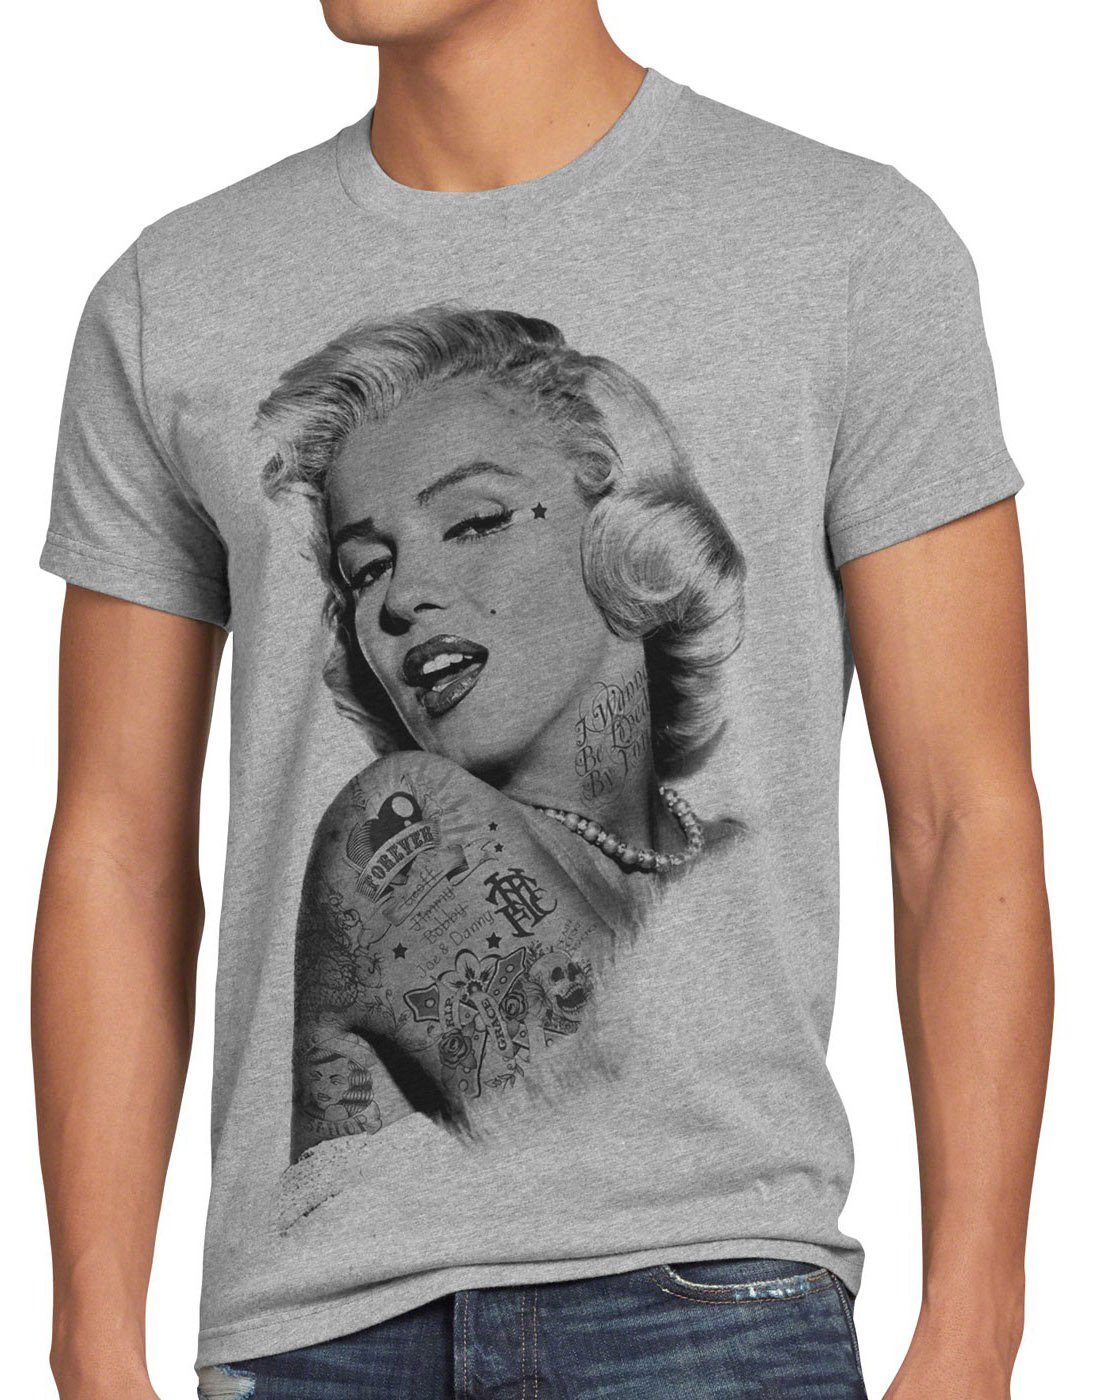 style3 Print-Shirt Herren T-Shirt Tattoo grau Marilyn star marylin inked rock meliert gun tätowiert monroe punk